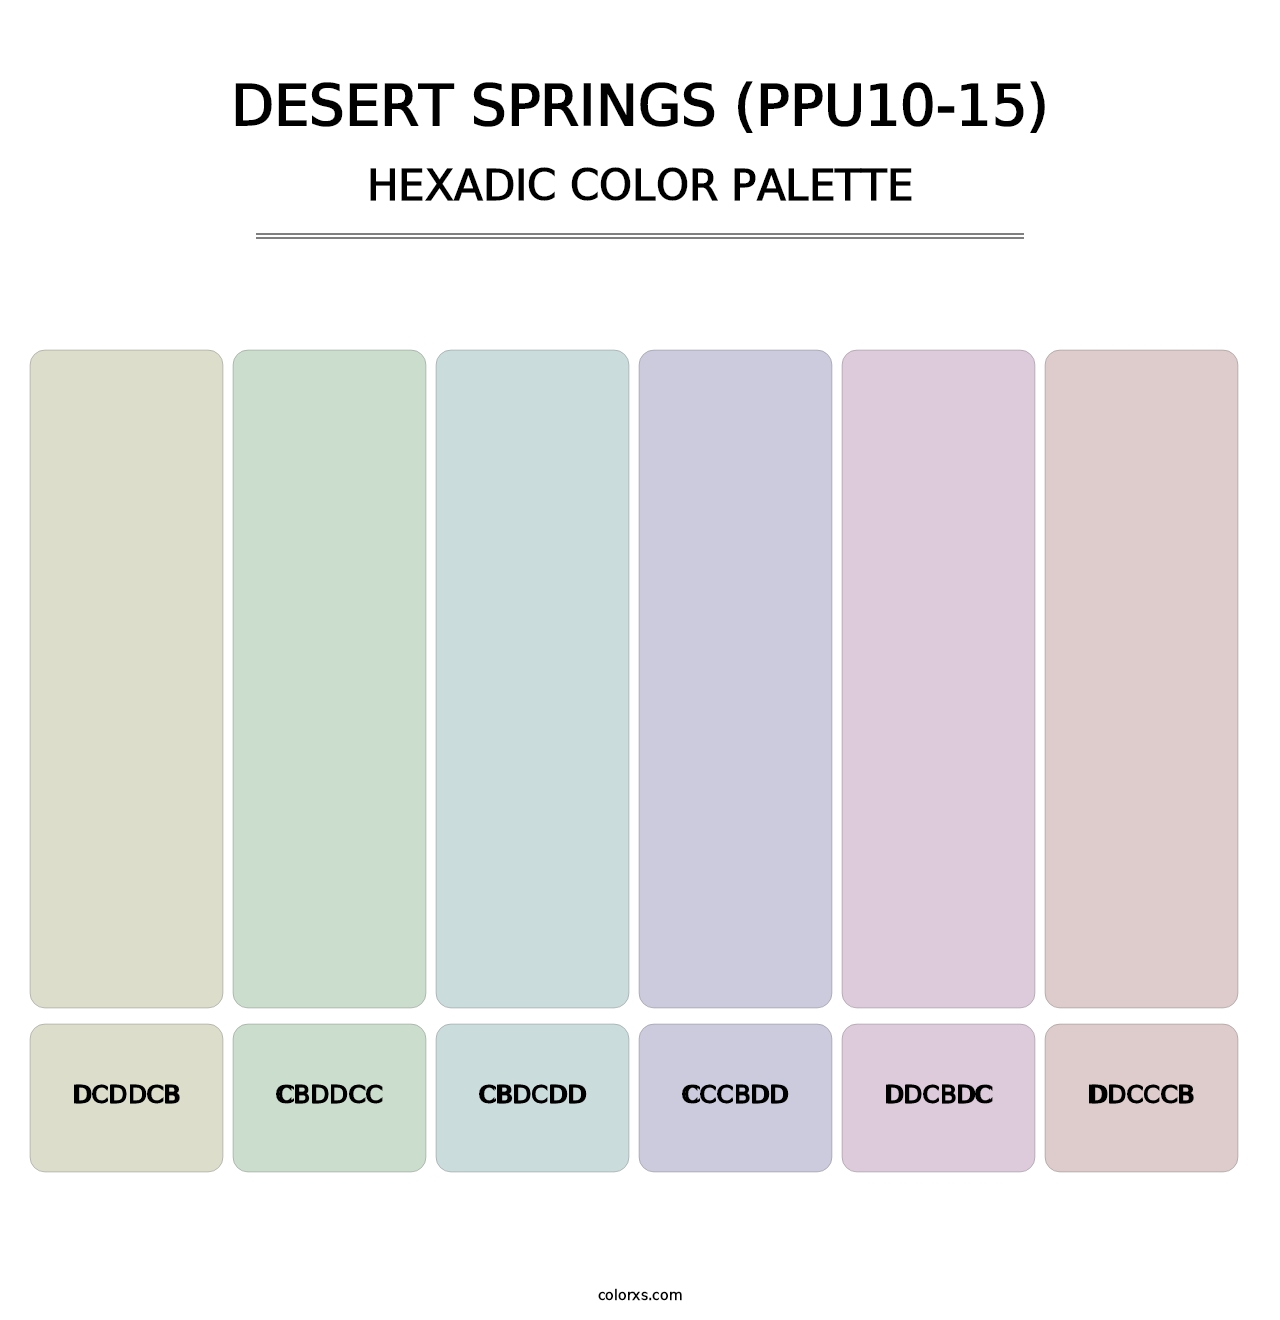 Desert Springs (PPU10-15) - Hexadic Color Palette